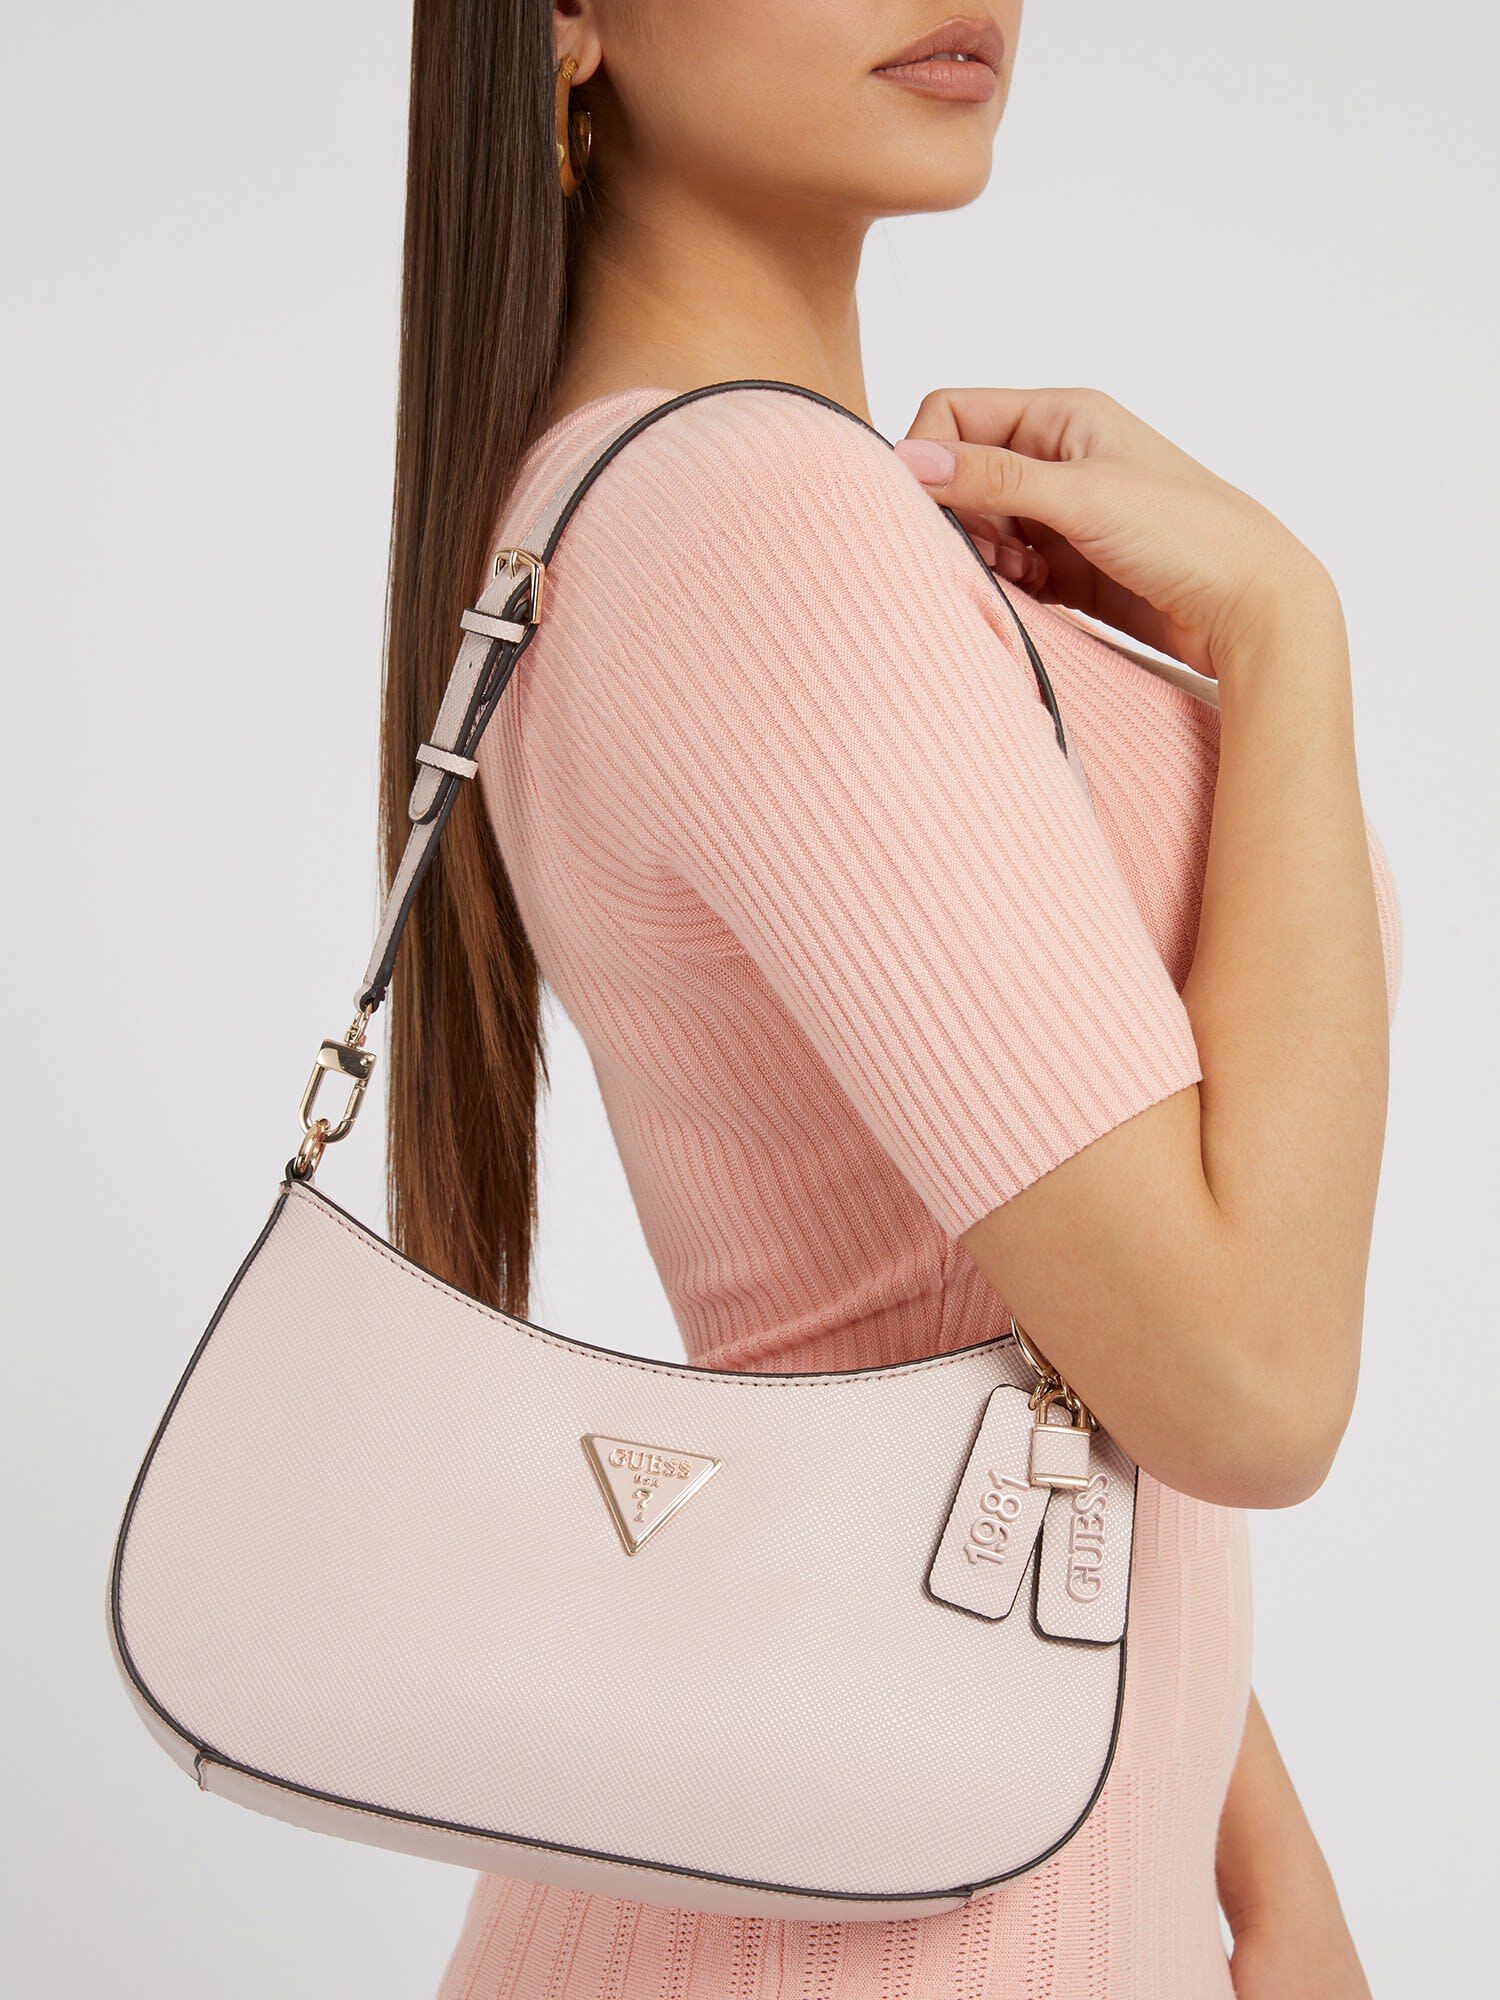 Shop GUESS Online Noelle Top Zip Shoulder Bag